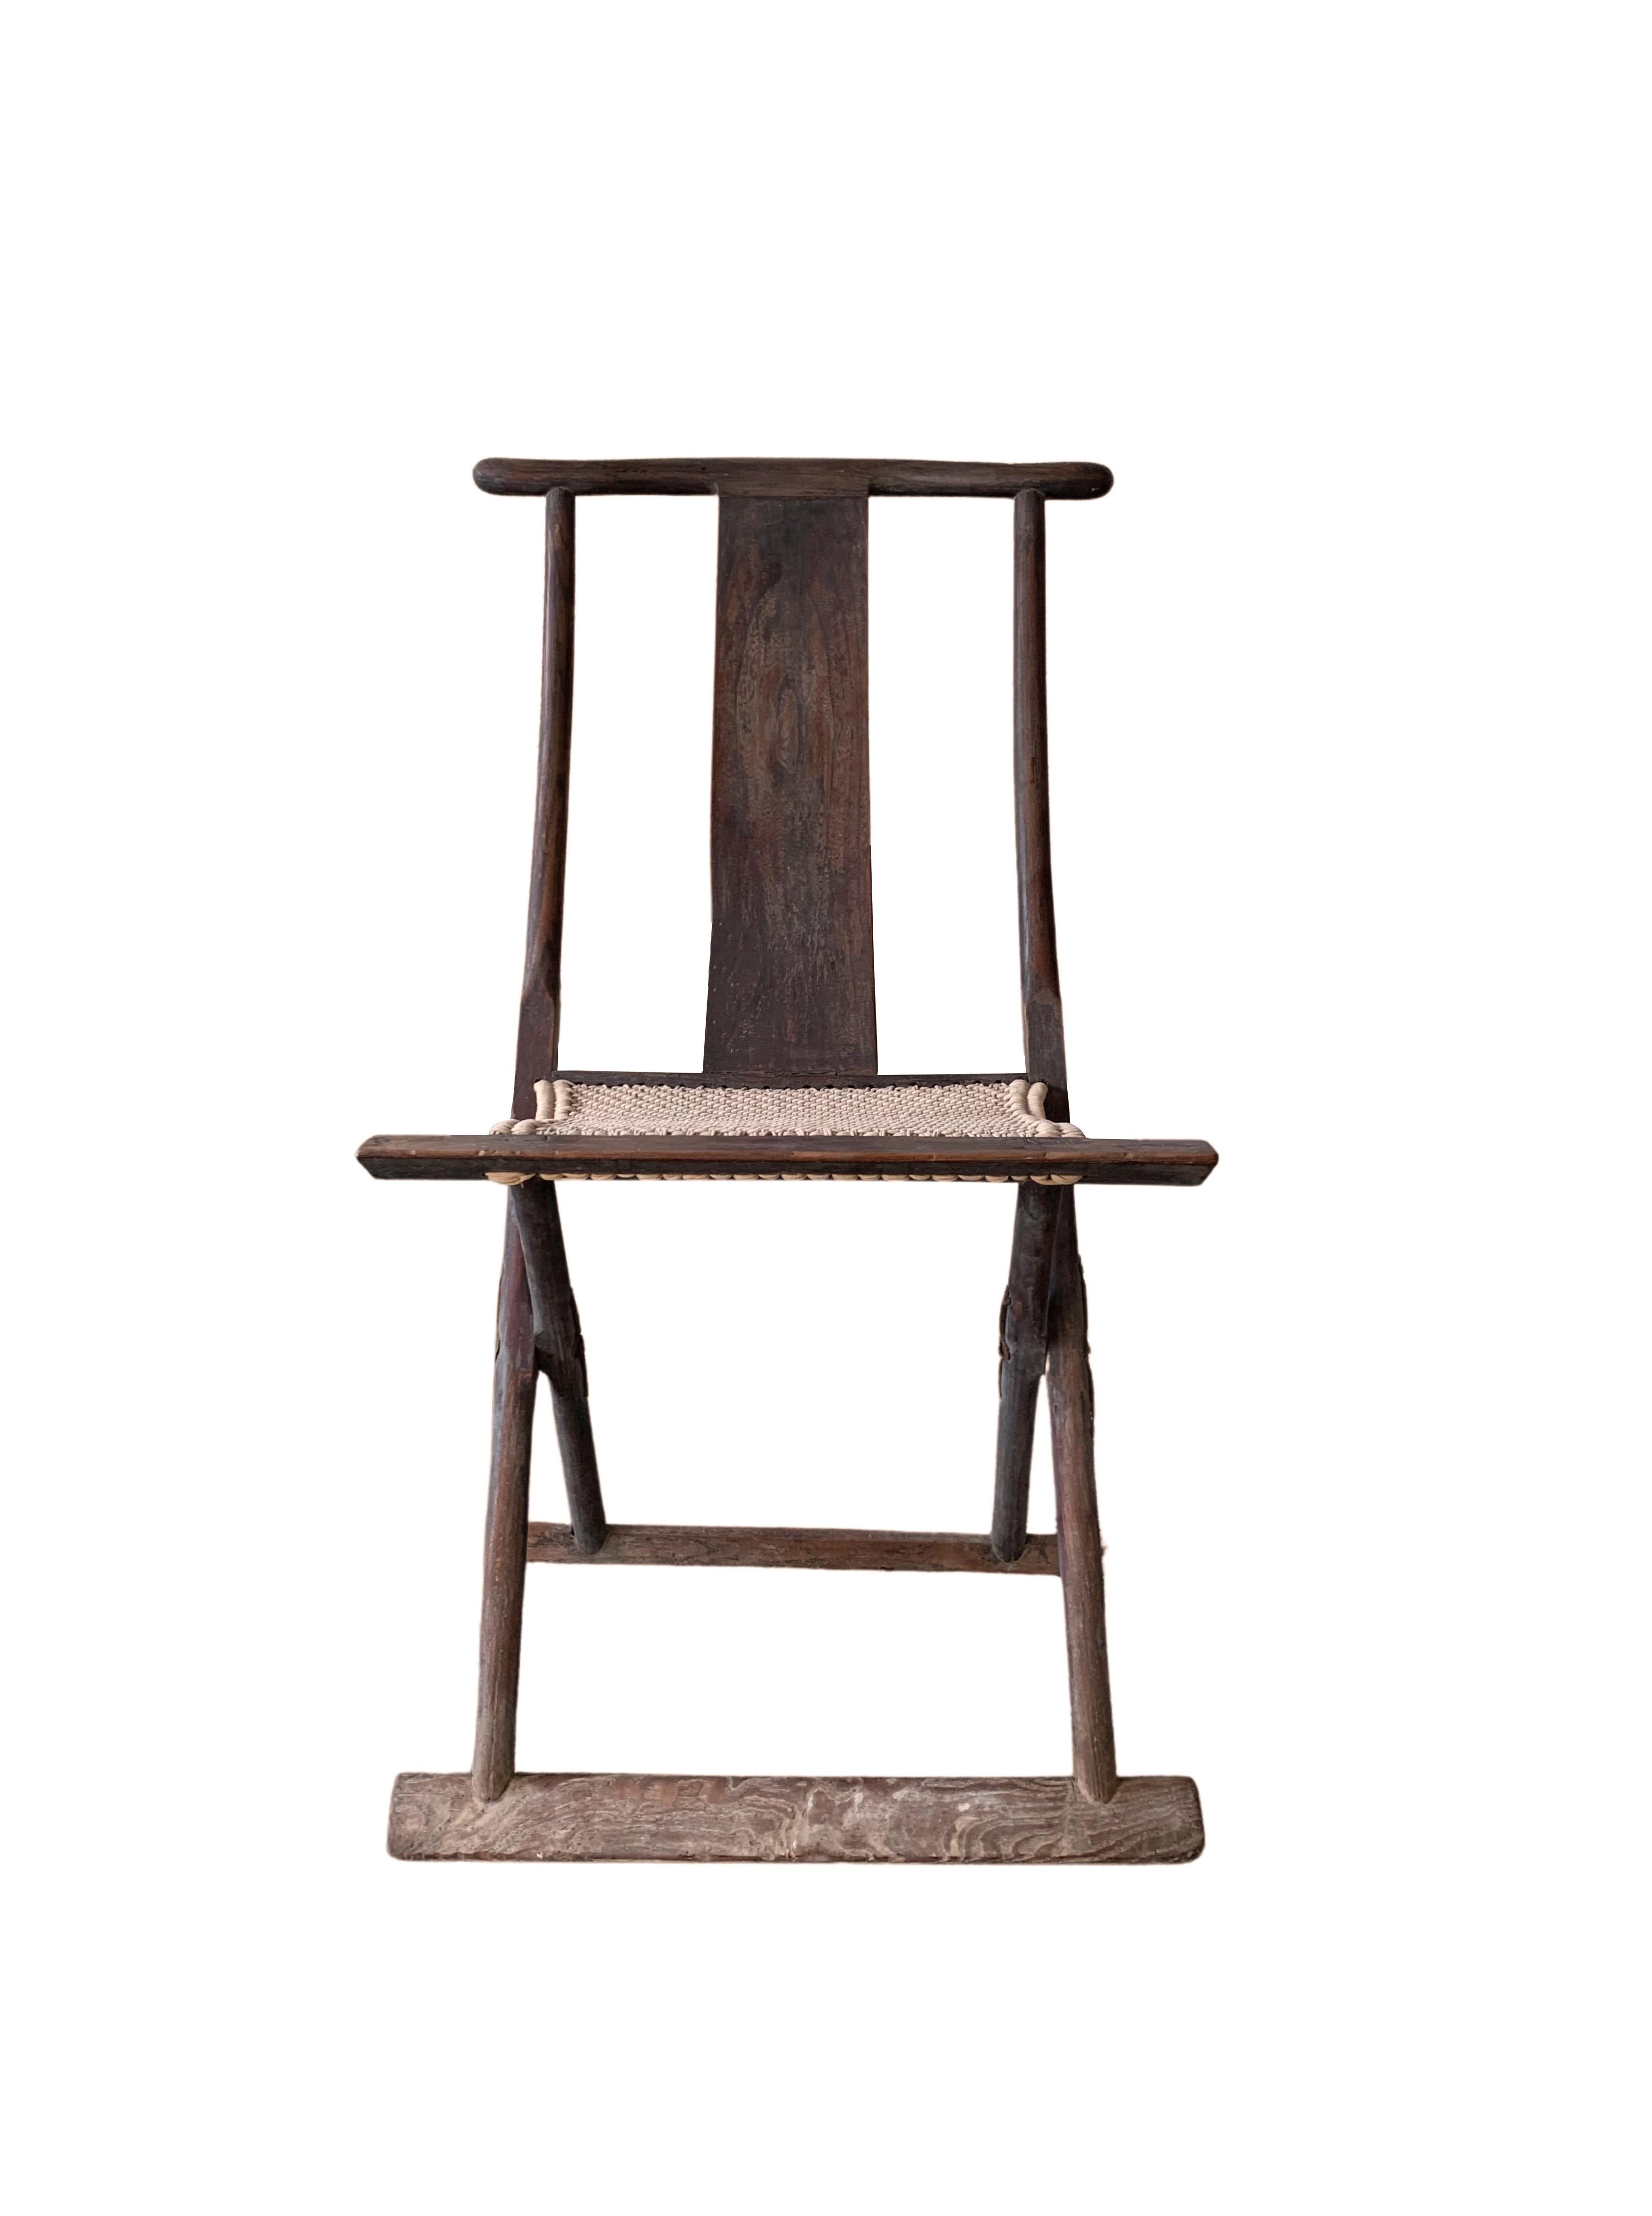 Cette chaise pliante du début du 20e siècle était autrefois utilisée par les voyageurs chinois. L'assise est fabriquée en tissu tissé, ce qui, associé au dossier, en fait un fauteuil confortable. Son design élégant, fin et minimal en fait le